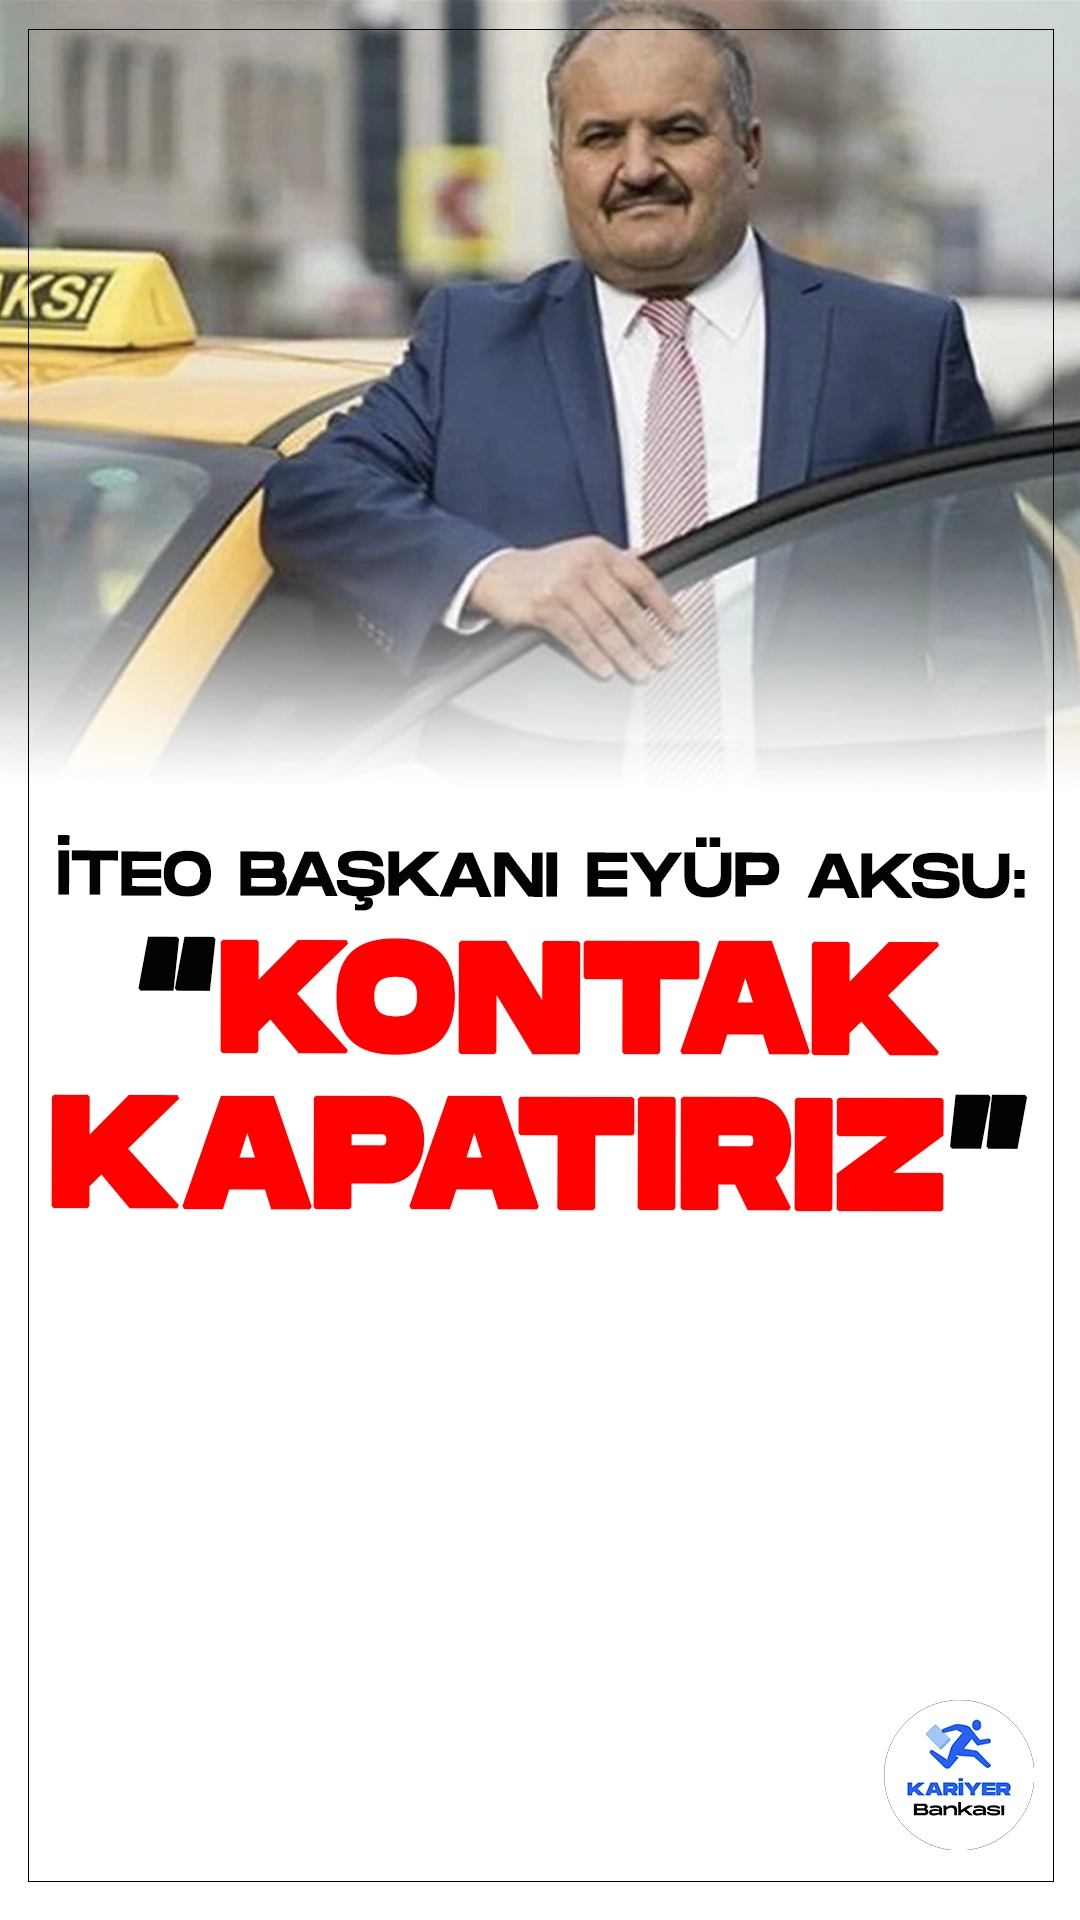 İstanbul Taksiciler Esnaf Odası Başkanı Eyüp Aksu: 'Kontak Kapatırız'.İstanbul'da toplu ulaşıma yapılan zamların ardından taksi ücretleri de arttı. Ancak İstanbul Taksiciler Esnaf Odası Başkanı Eyüp Aksu, zam oranına itiraz ederek sert bir açıklama yaptı: "Esnafı hiçe sayan teklifi kabul etmiyoruz. Bu maliyetlerle kontak kapatırız."